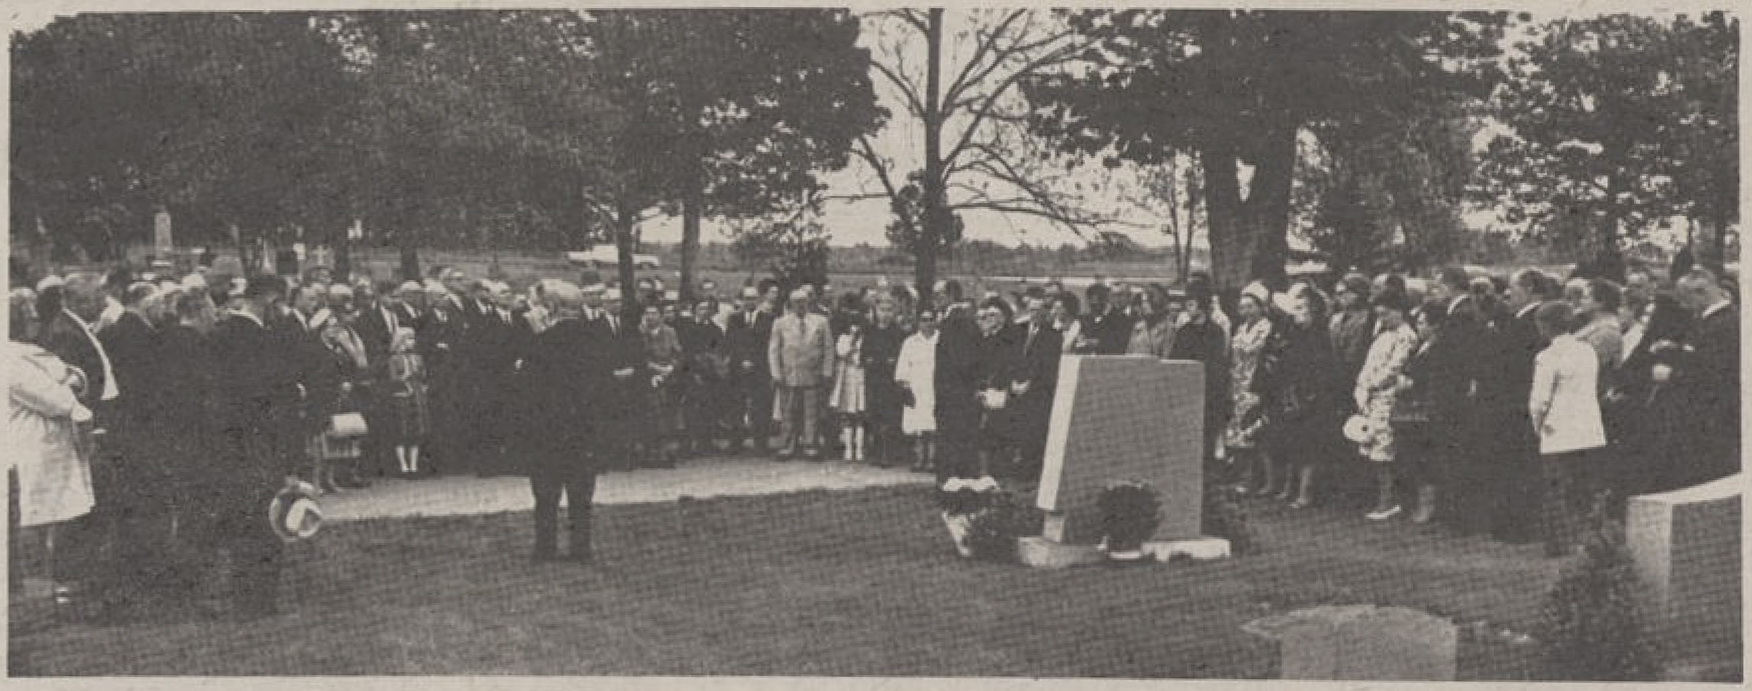 Paminklo atidengimo ceremonija Čikagos lietuvių tautinėse kapinėse, 1966 m. M. Nagio nuotrauka. Iš laikraščio „Dirva“ | Mažosios Lietuvos istorijos muziejaus nuotr.